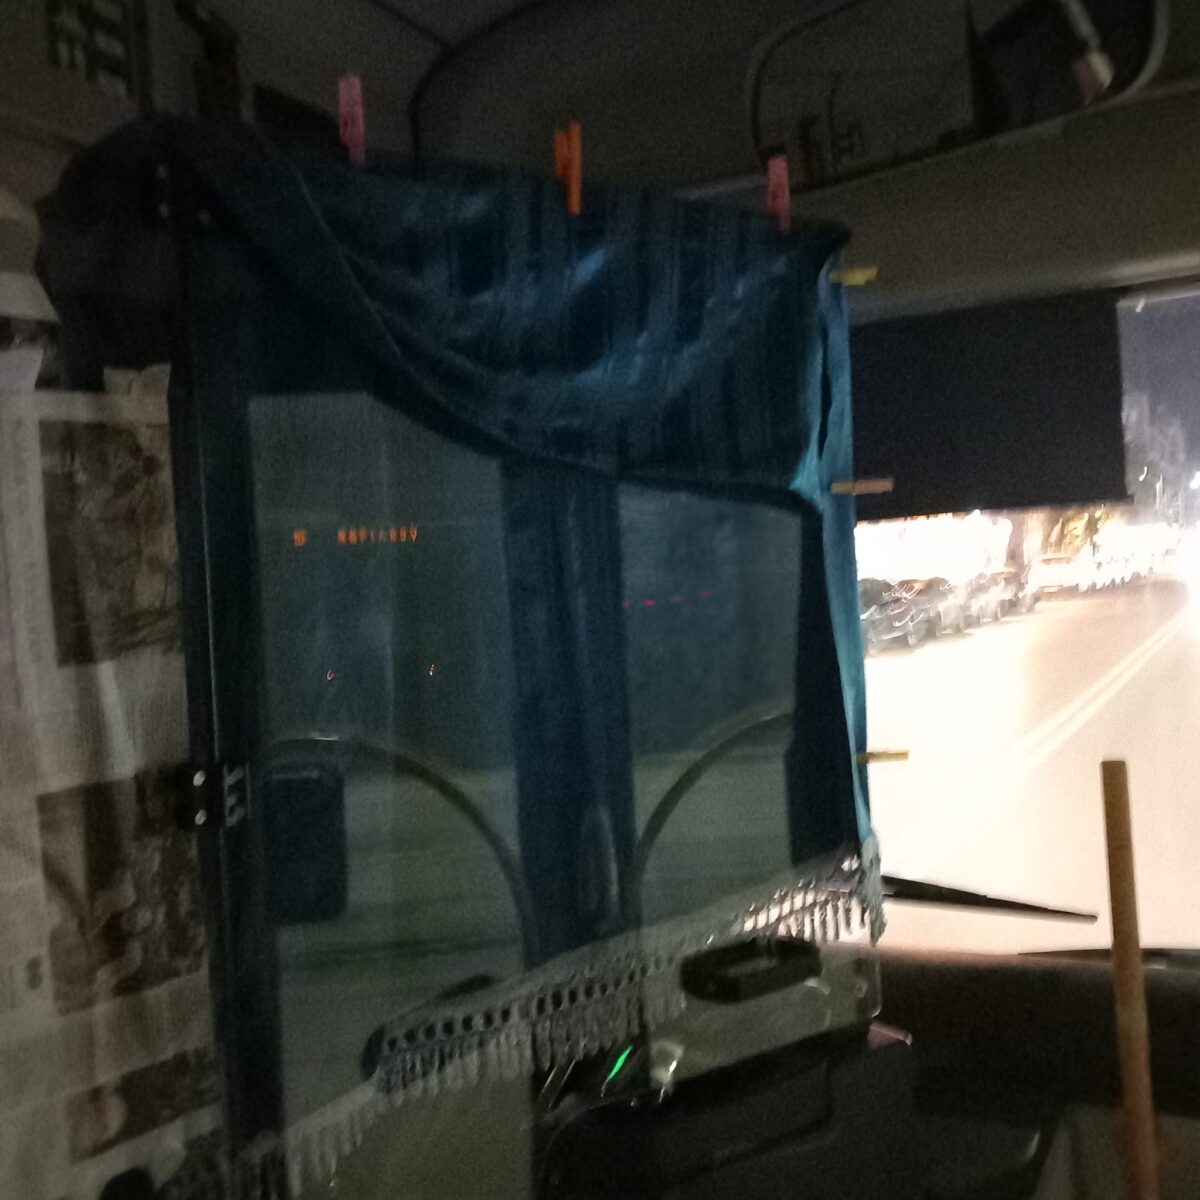 Θεσσαλονίκη: Απίστευτη πατέντα από οδηγό αστικού – Έβαλε κουρτίνα με μανταλάκια μέσα στο λεωφορείο! (Photo)